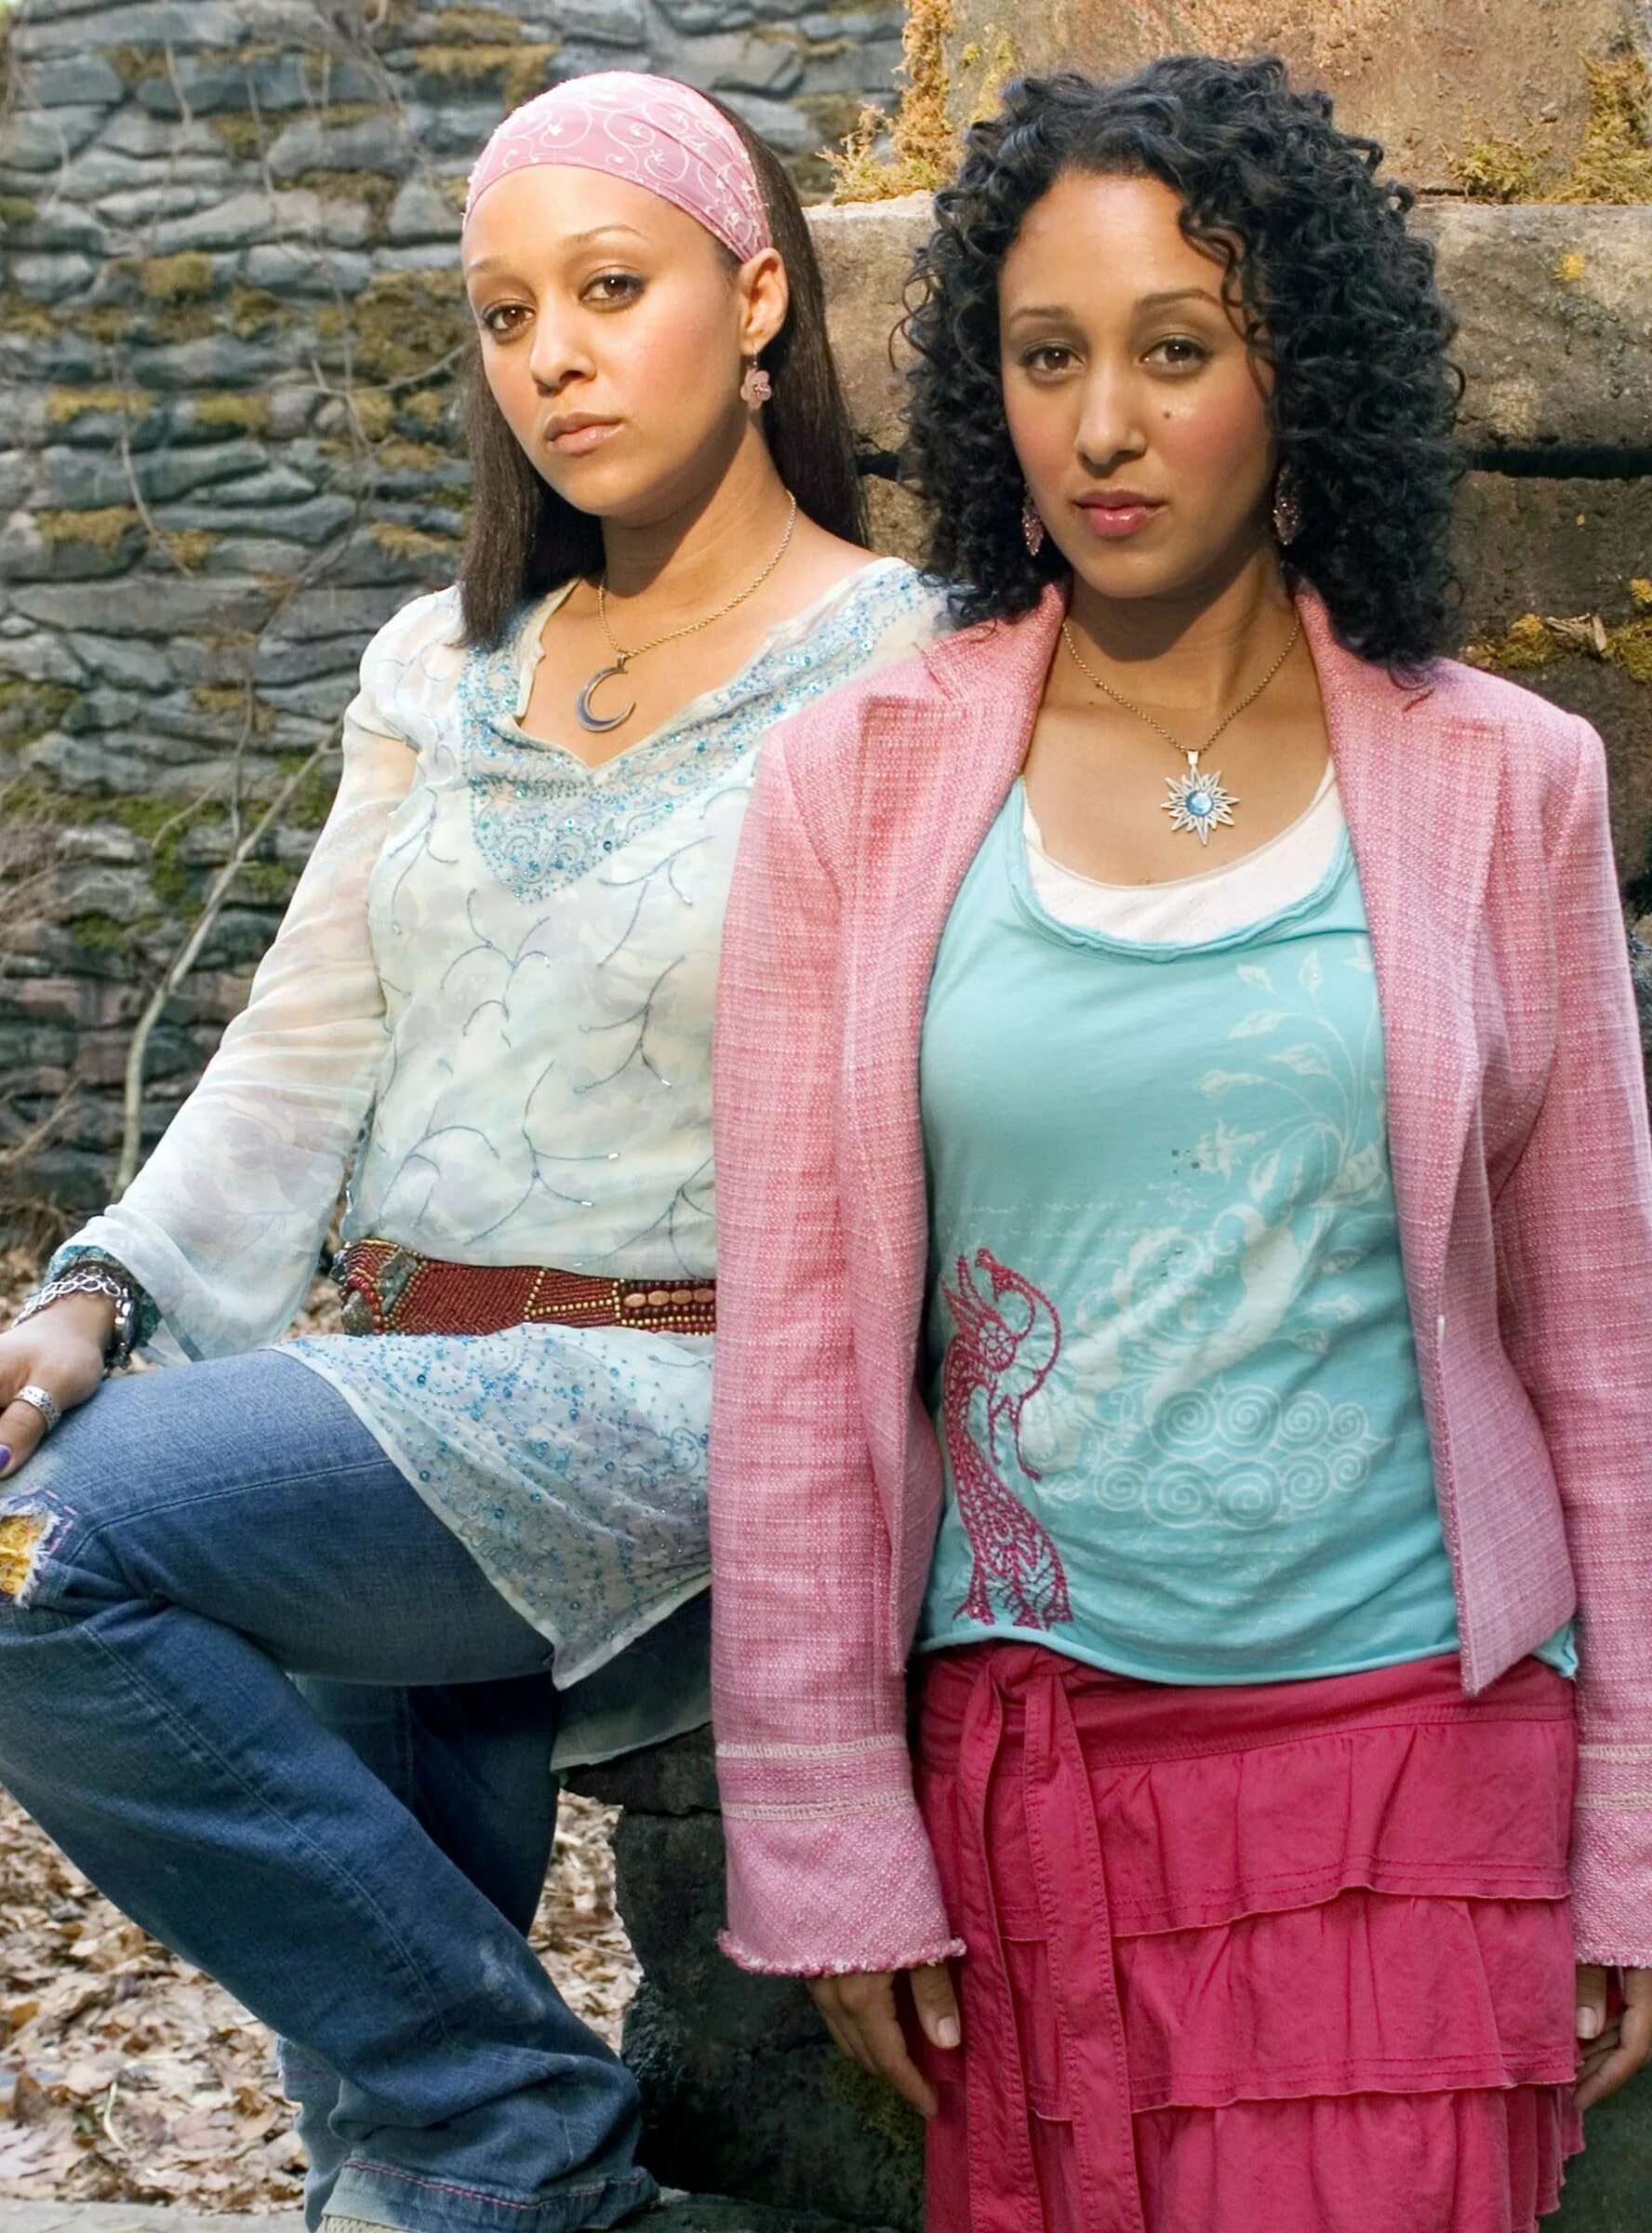 4 для обоих сестер. Ведьмы-близняшки (2005). Тиа Моури ведьмы близняшки. Аполло и Артемис ведьмы близняшки.